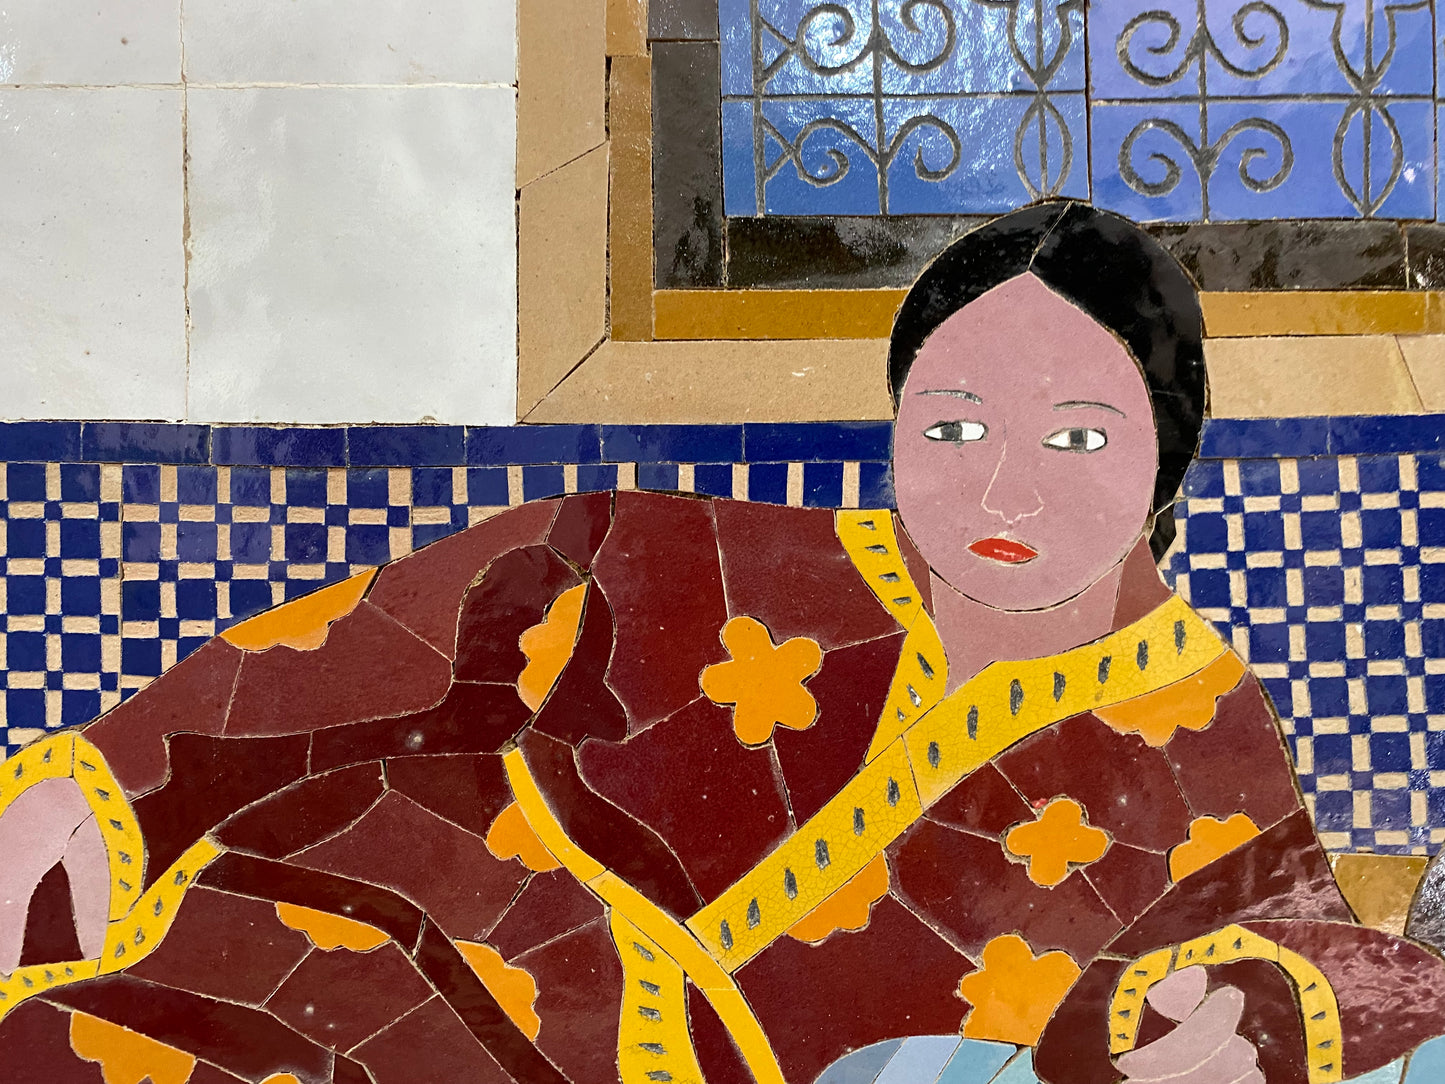 Mur de mosaïque marocain suspendu avec cadre en métal, petites pièces de mosaïque oeuvre d'art de femme marocaine, art de mosaïque de décor de mosaïque de mur, mur d'argile de tuiles